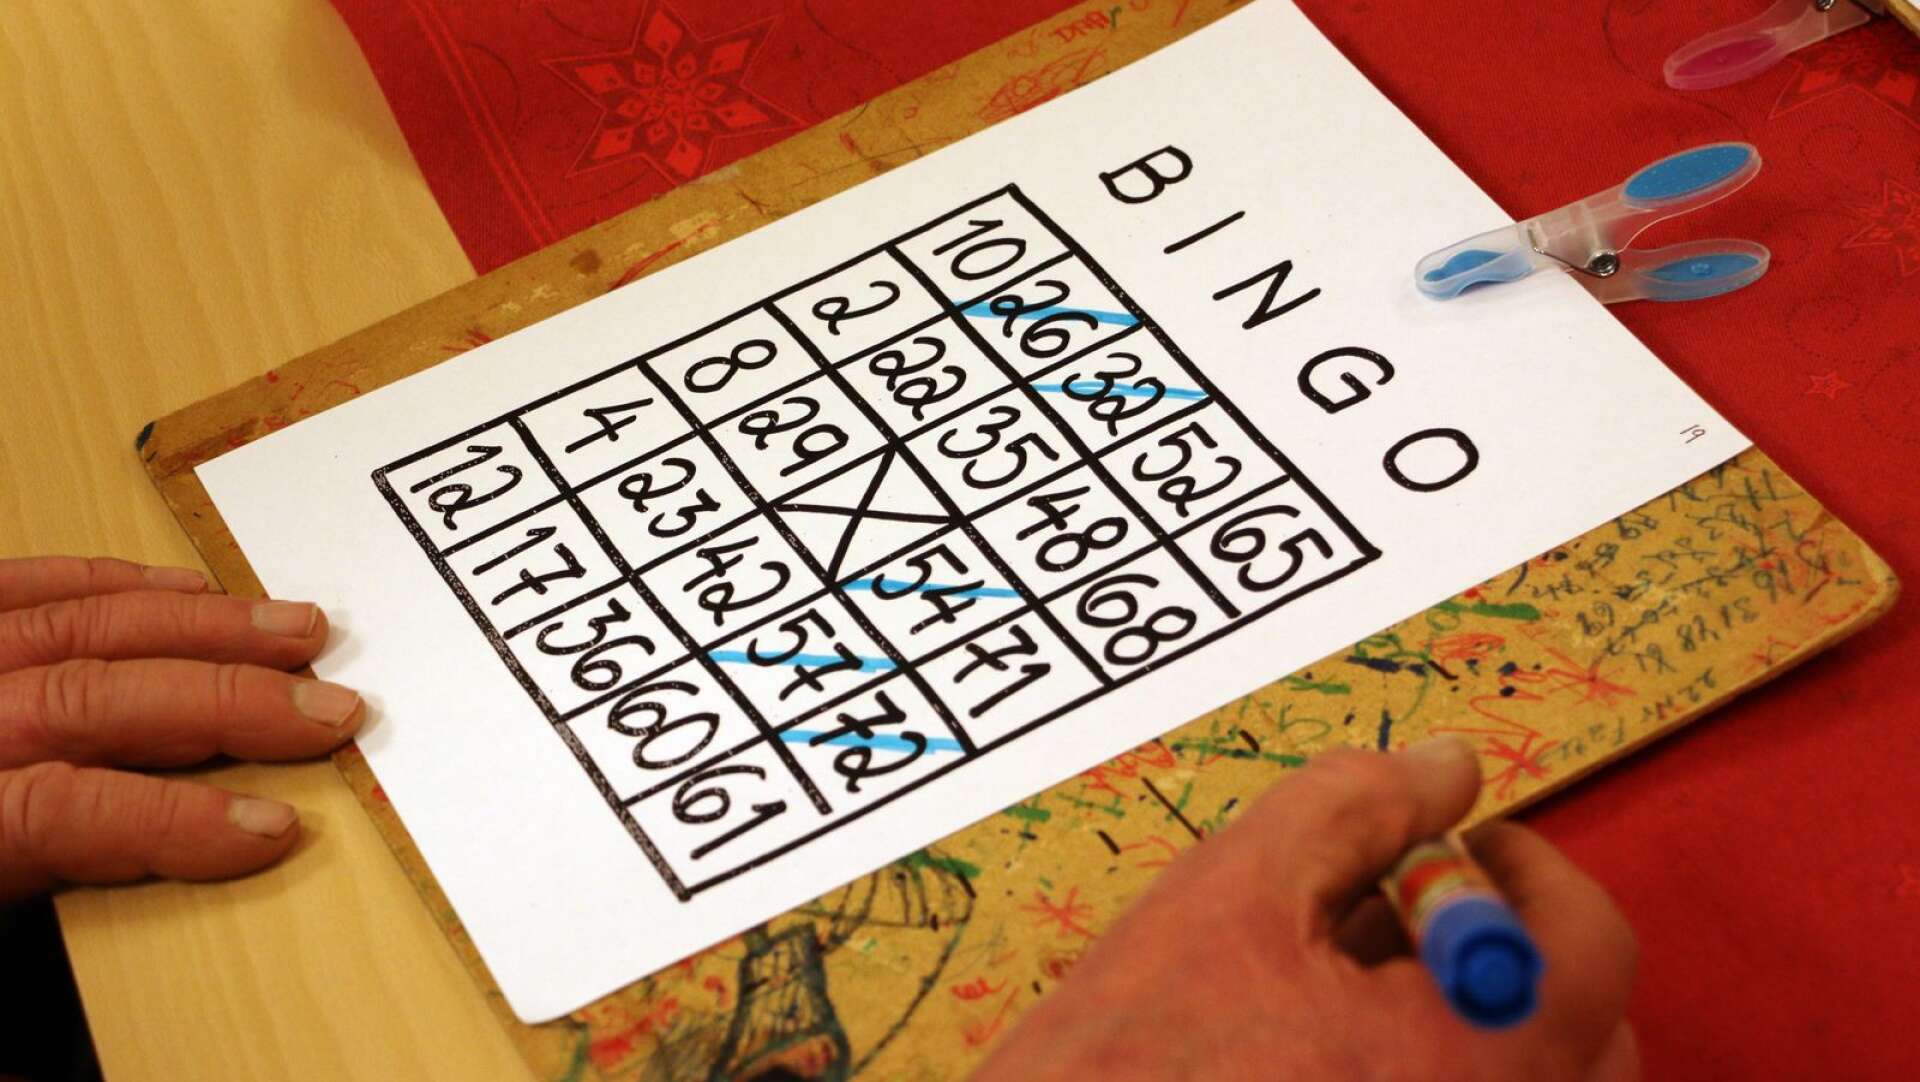 Bingospel var en av de vanligaste aktiviteterna innan aktivitetssamordnarnas intåg i äldreomsorgen. 